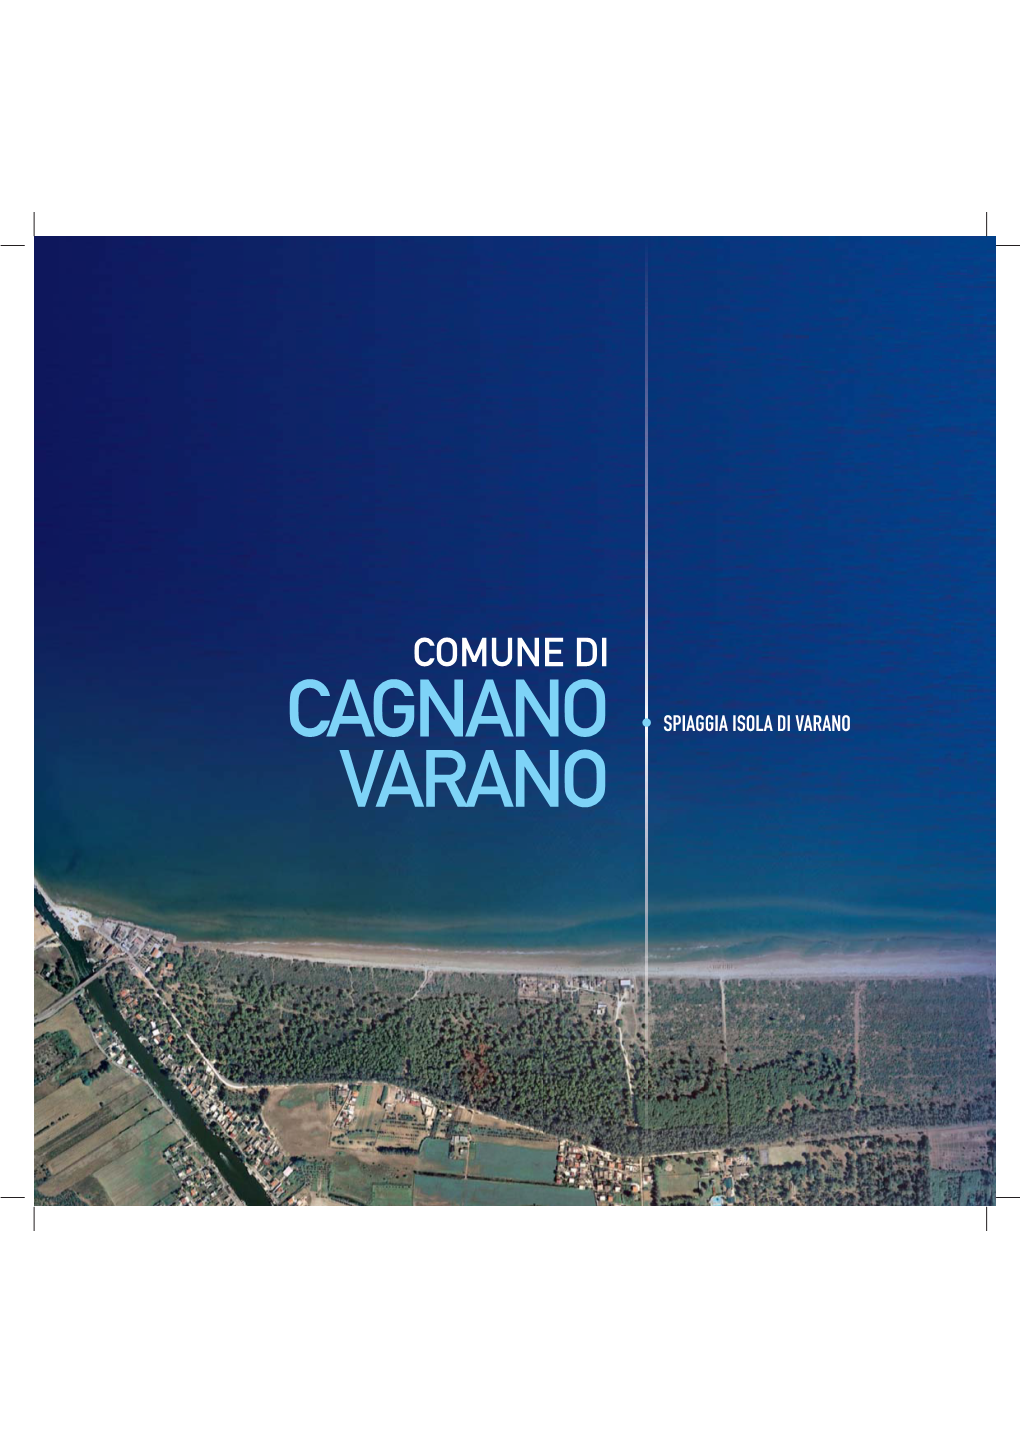 Cagnano Varano